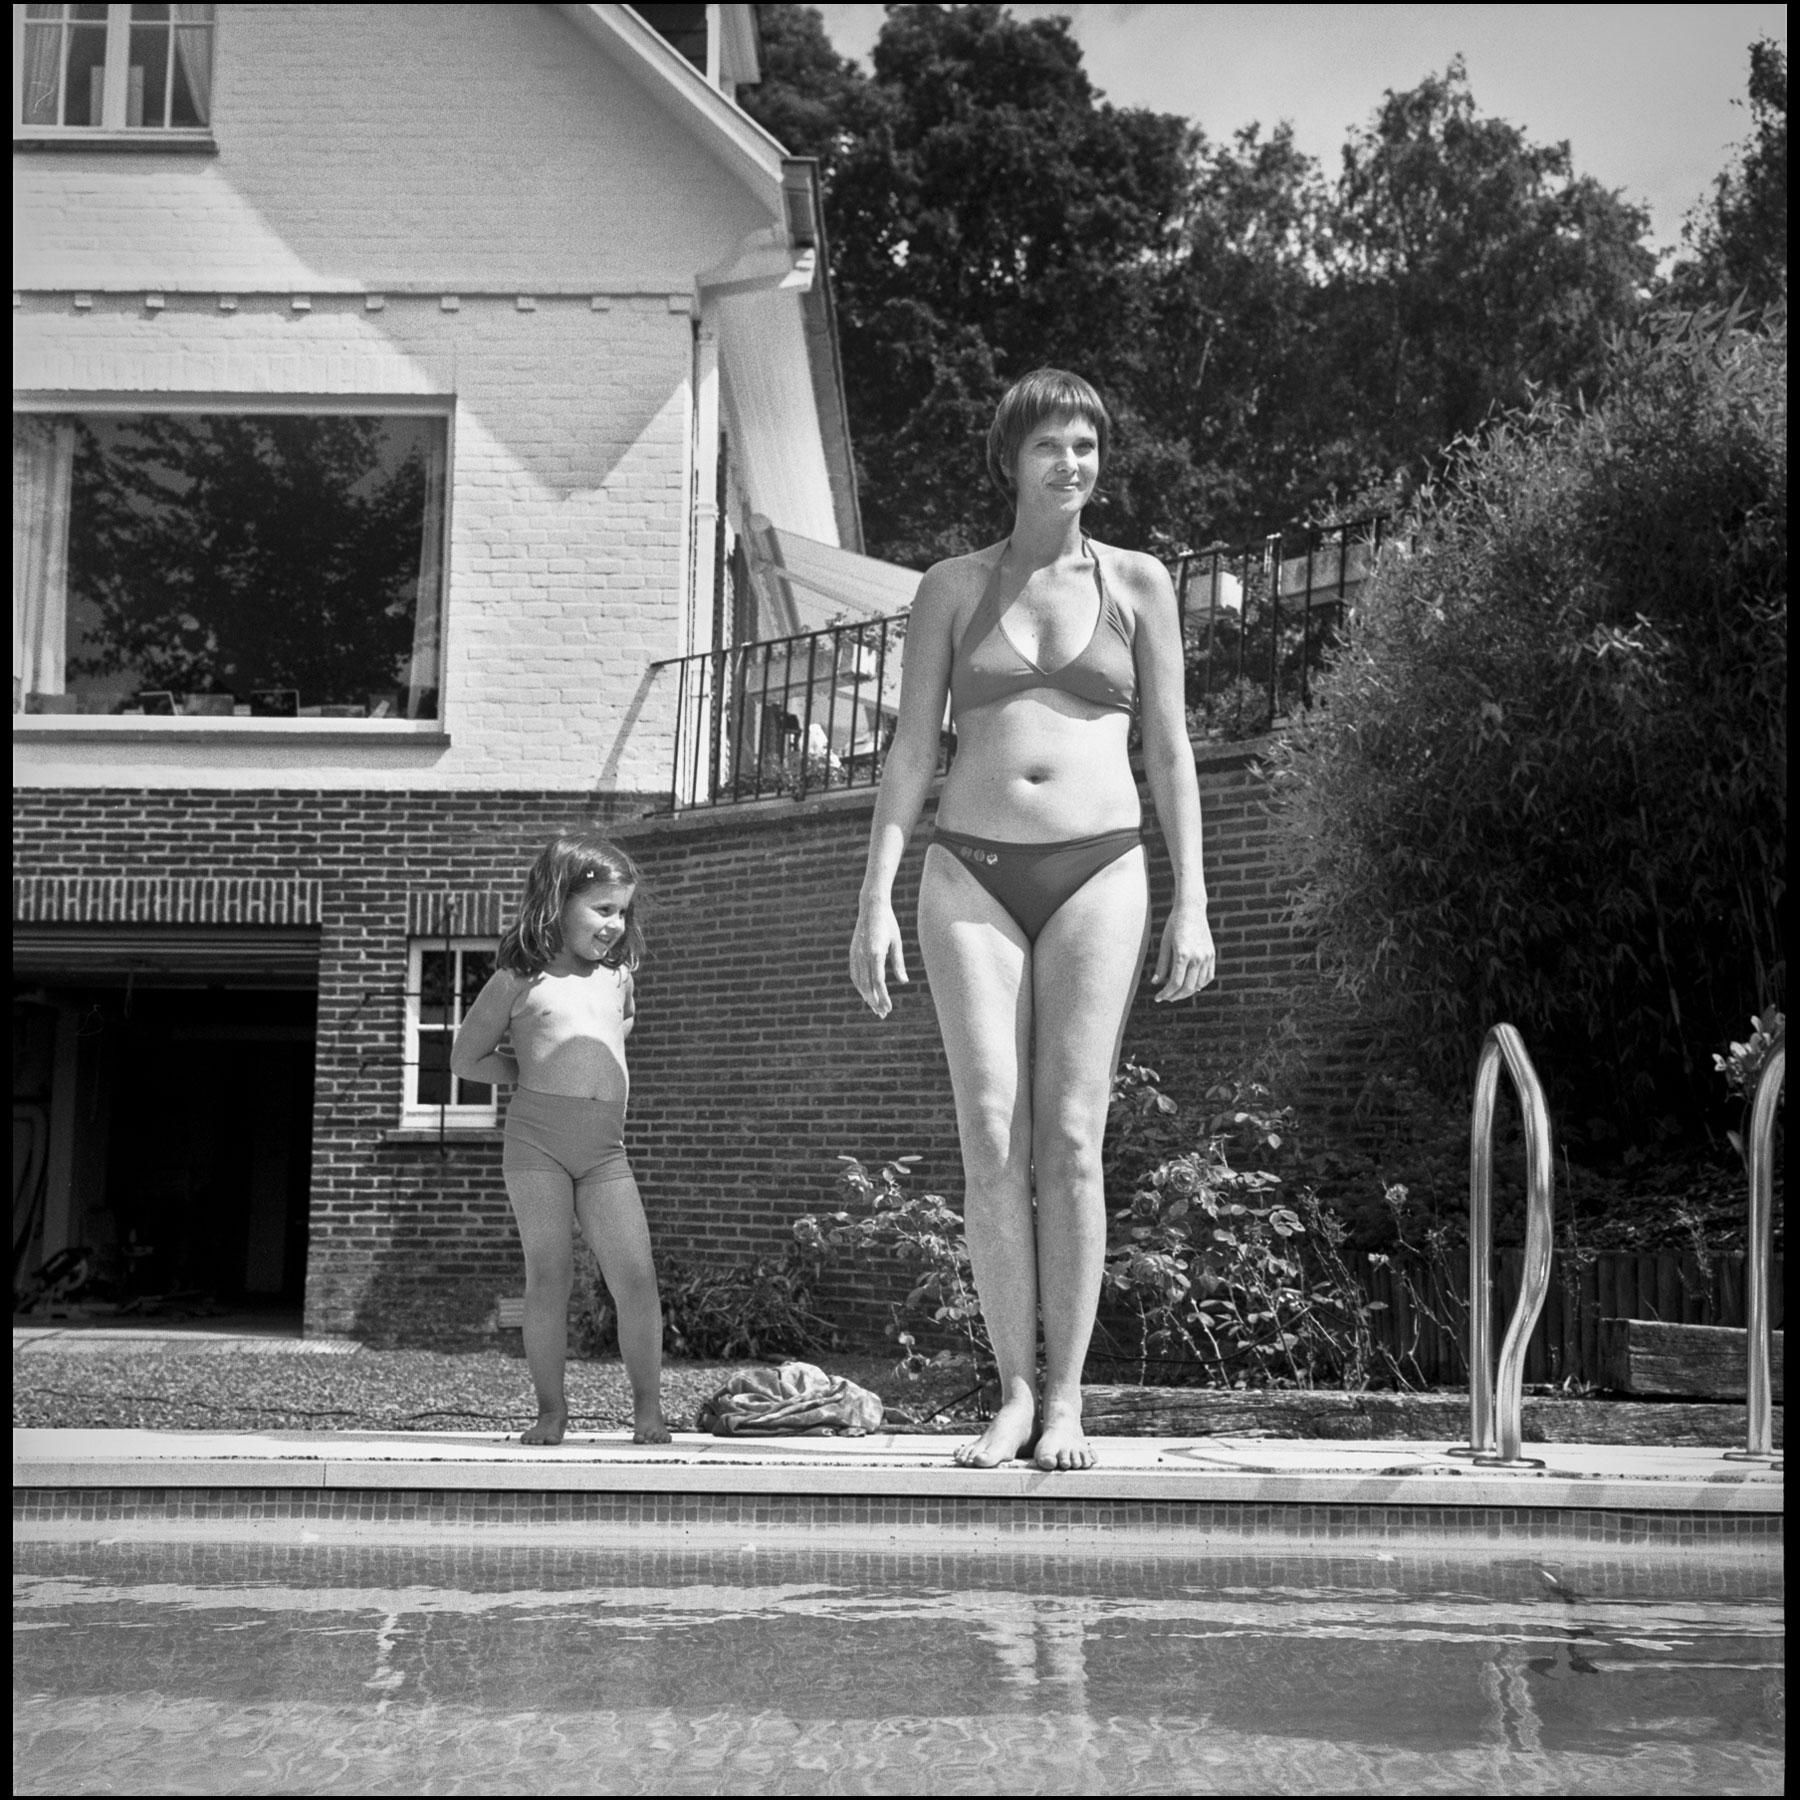 fillette-femme-maillot-de-bain-debout-bord-de-piscine-devant-maison-brique-noir-et-blanc